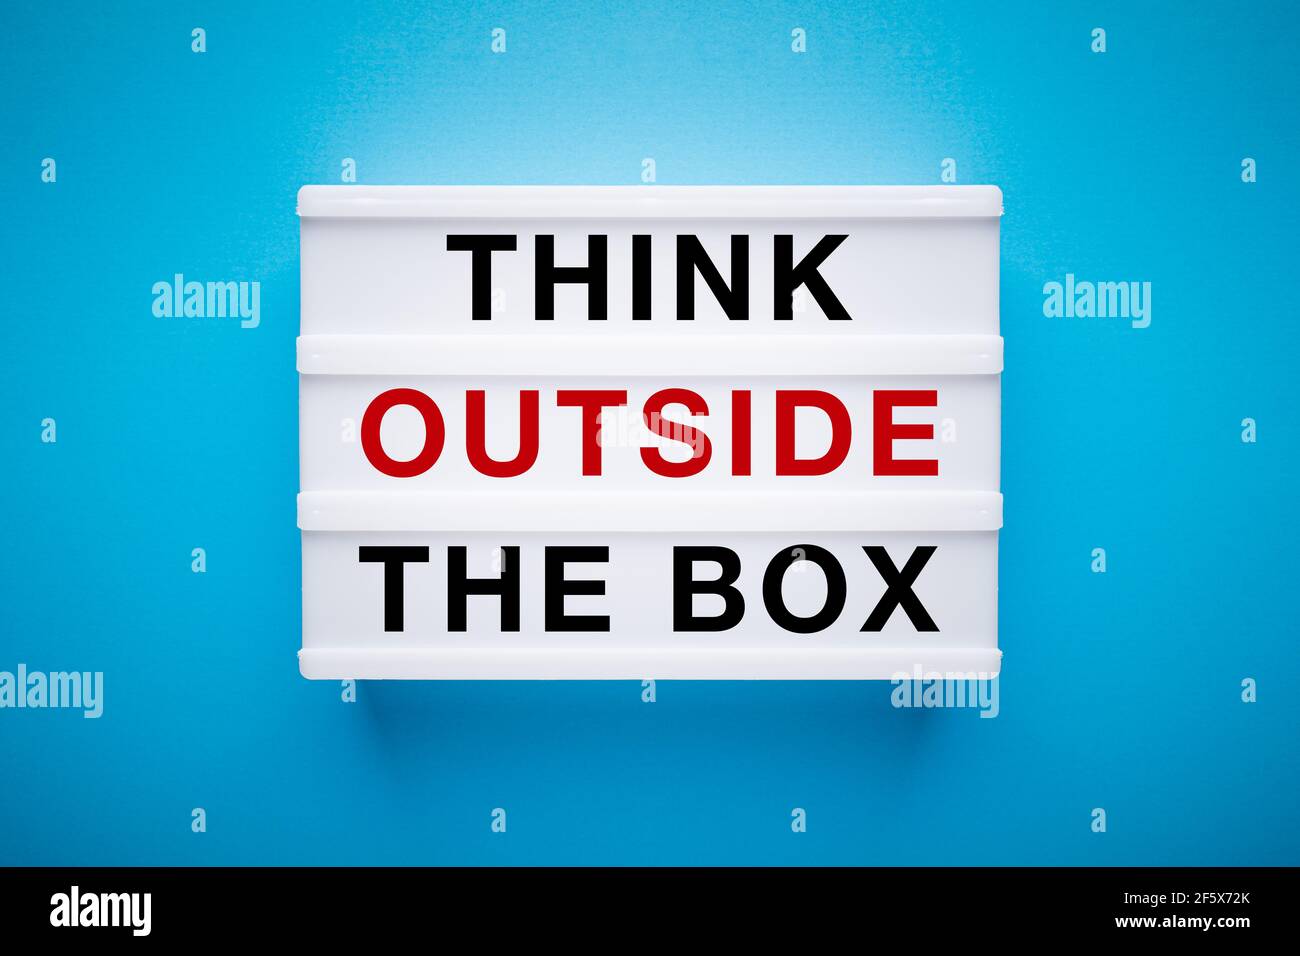 Leuchtkasten auf hellblauem Hintergrund mit Slogan: Think outside the box. Stockfoto